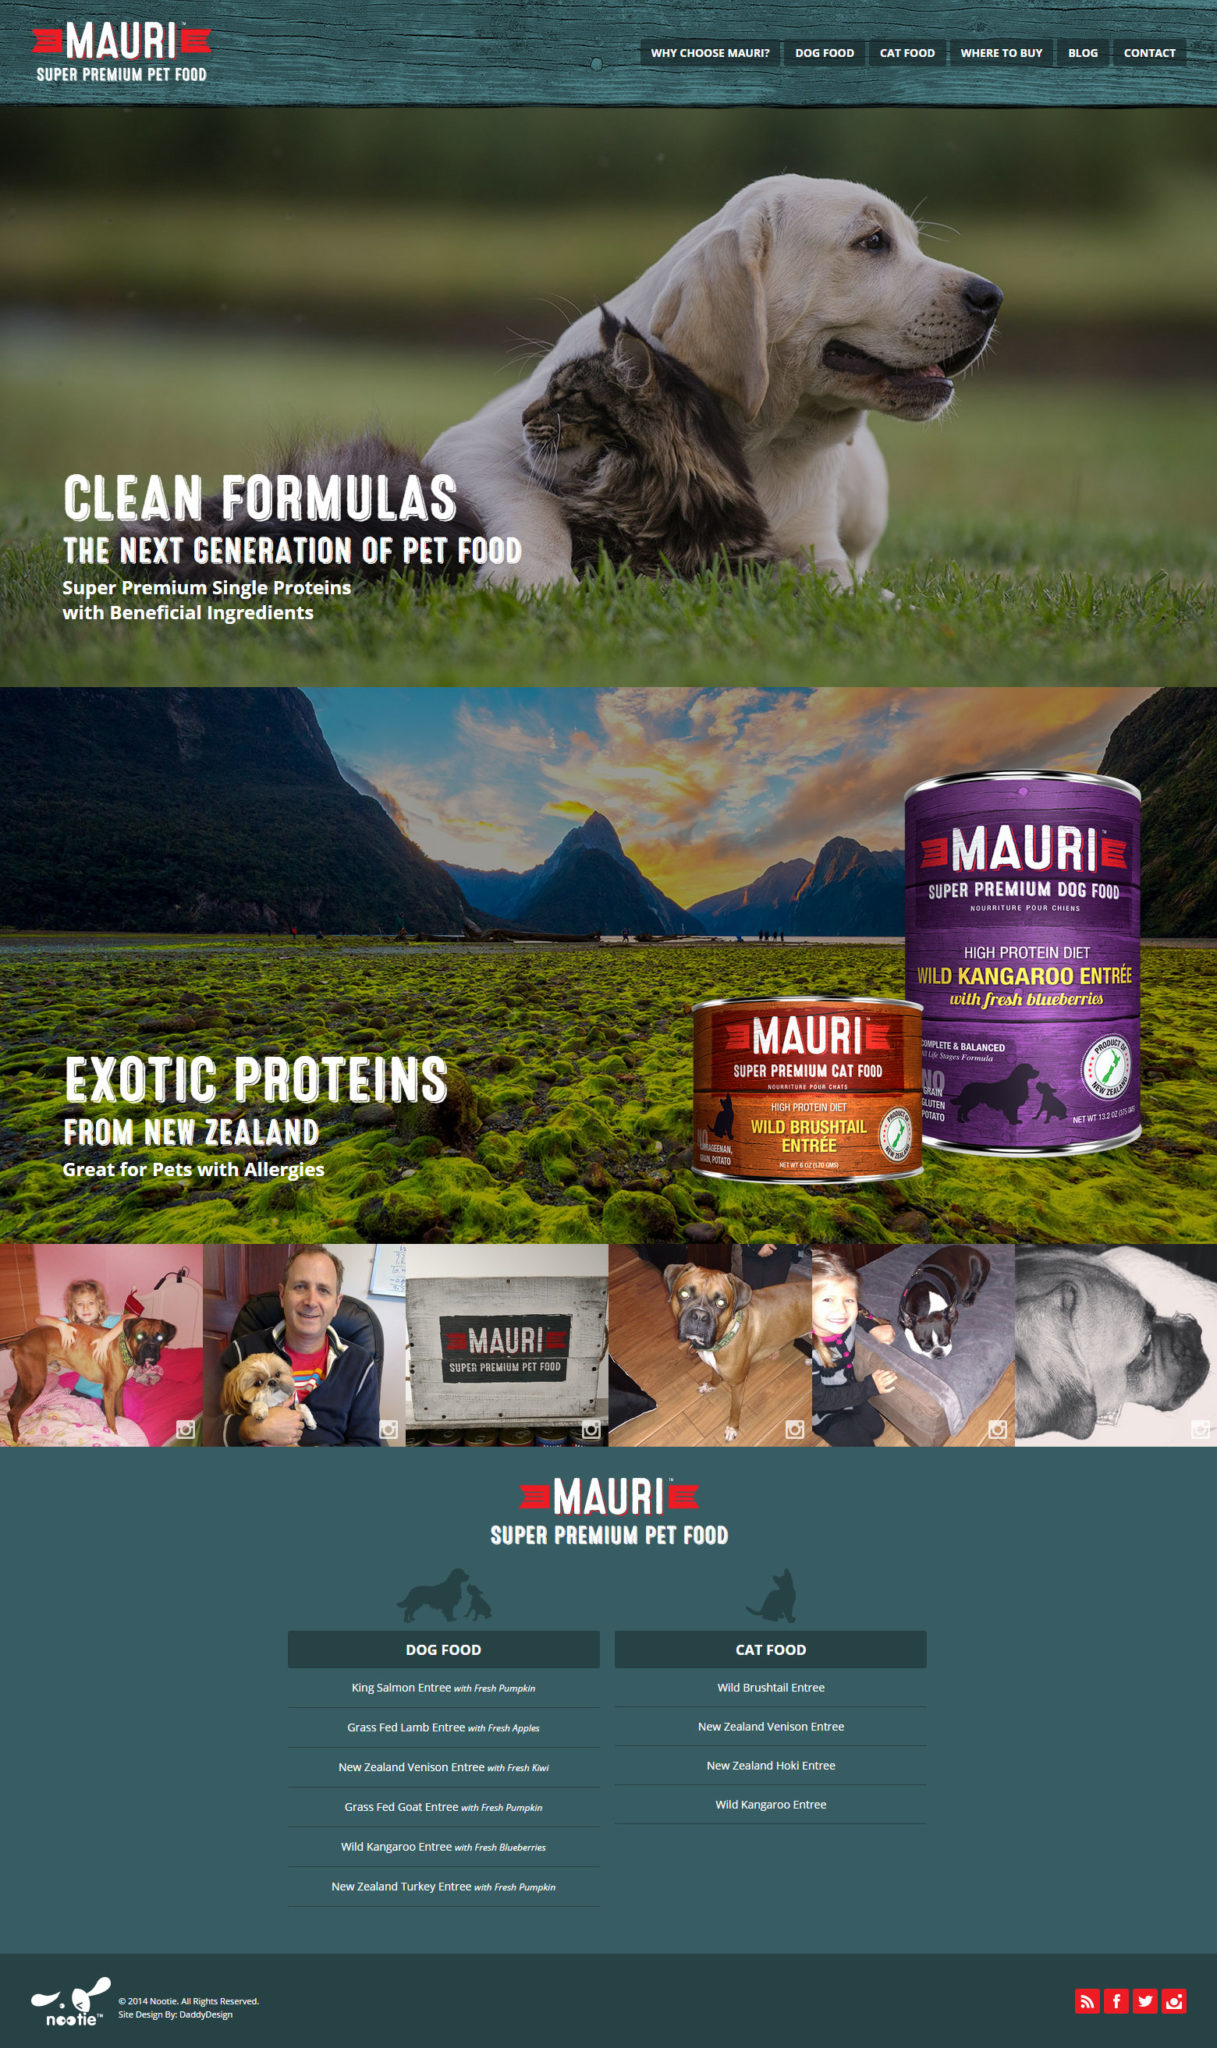 MAURI Super Premium Pet Food